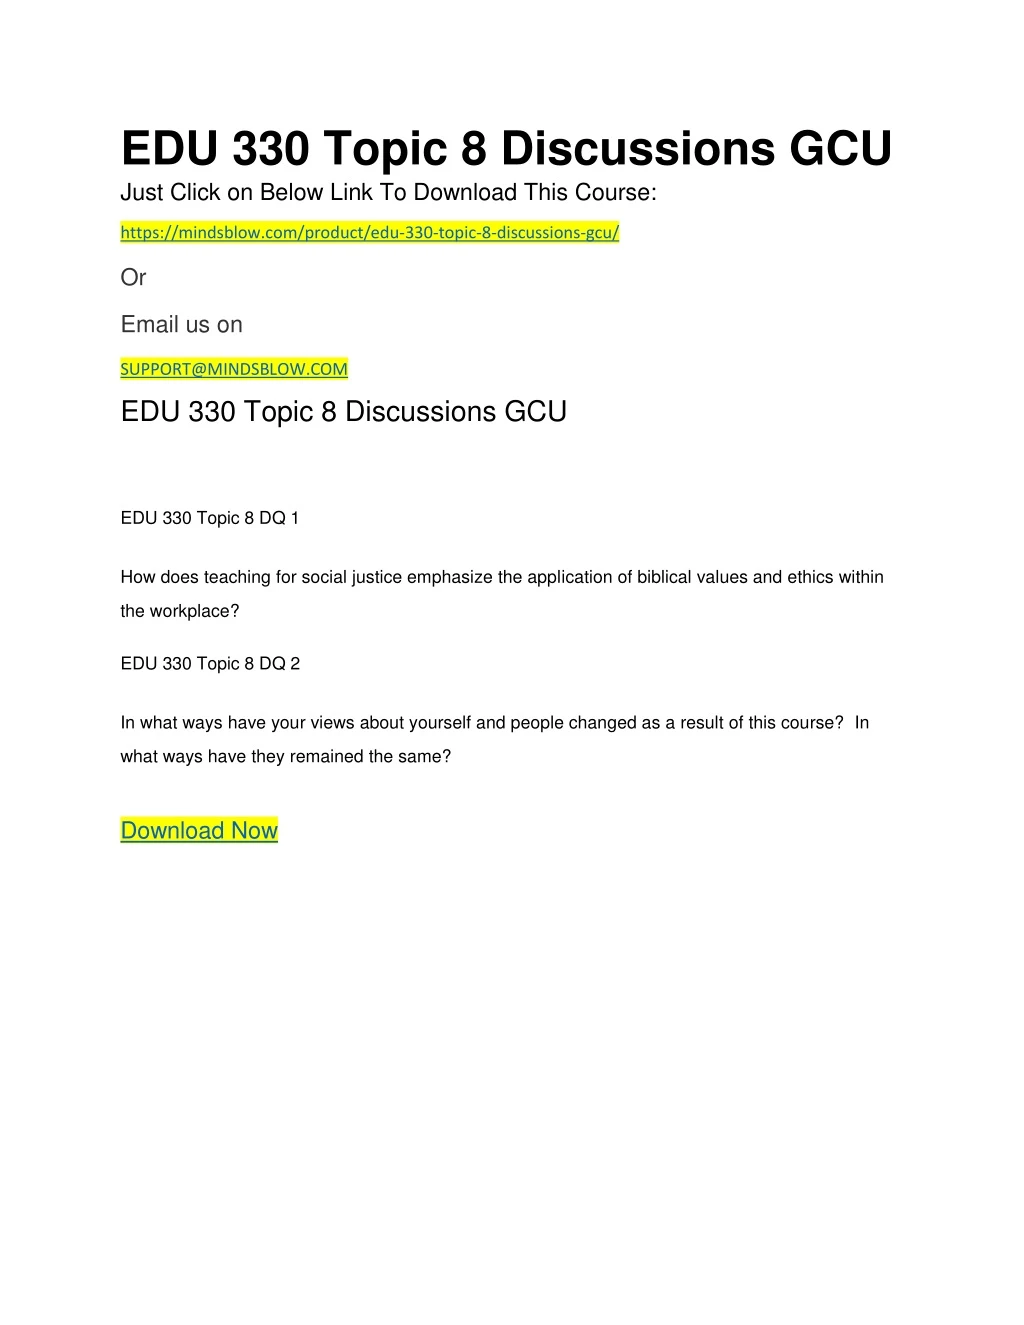 edu 330 topic 8 discussions gcu just click